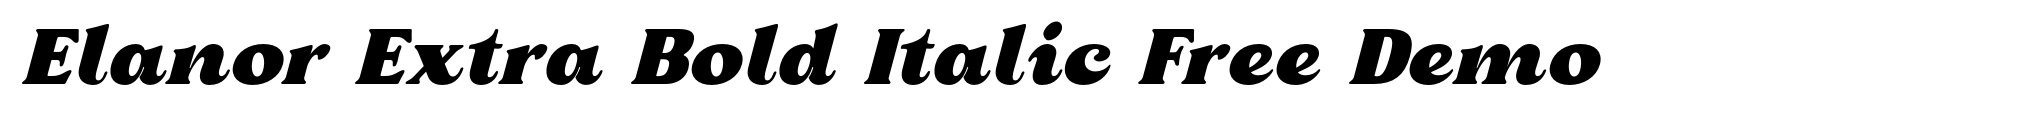 Elanor Extra Bold Italic Free Demo image